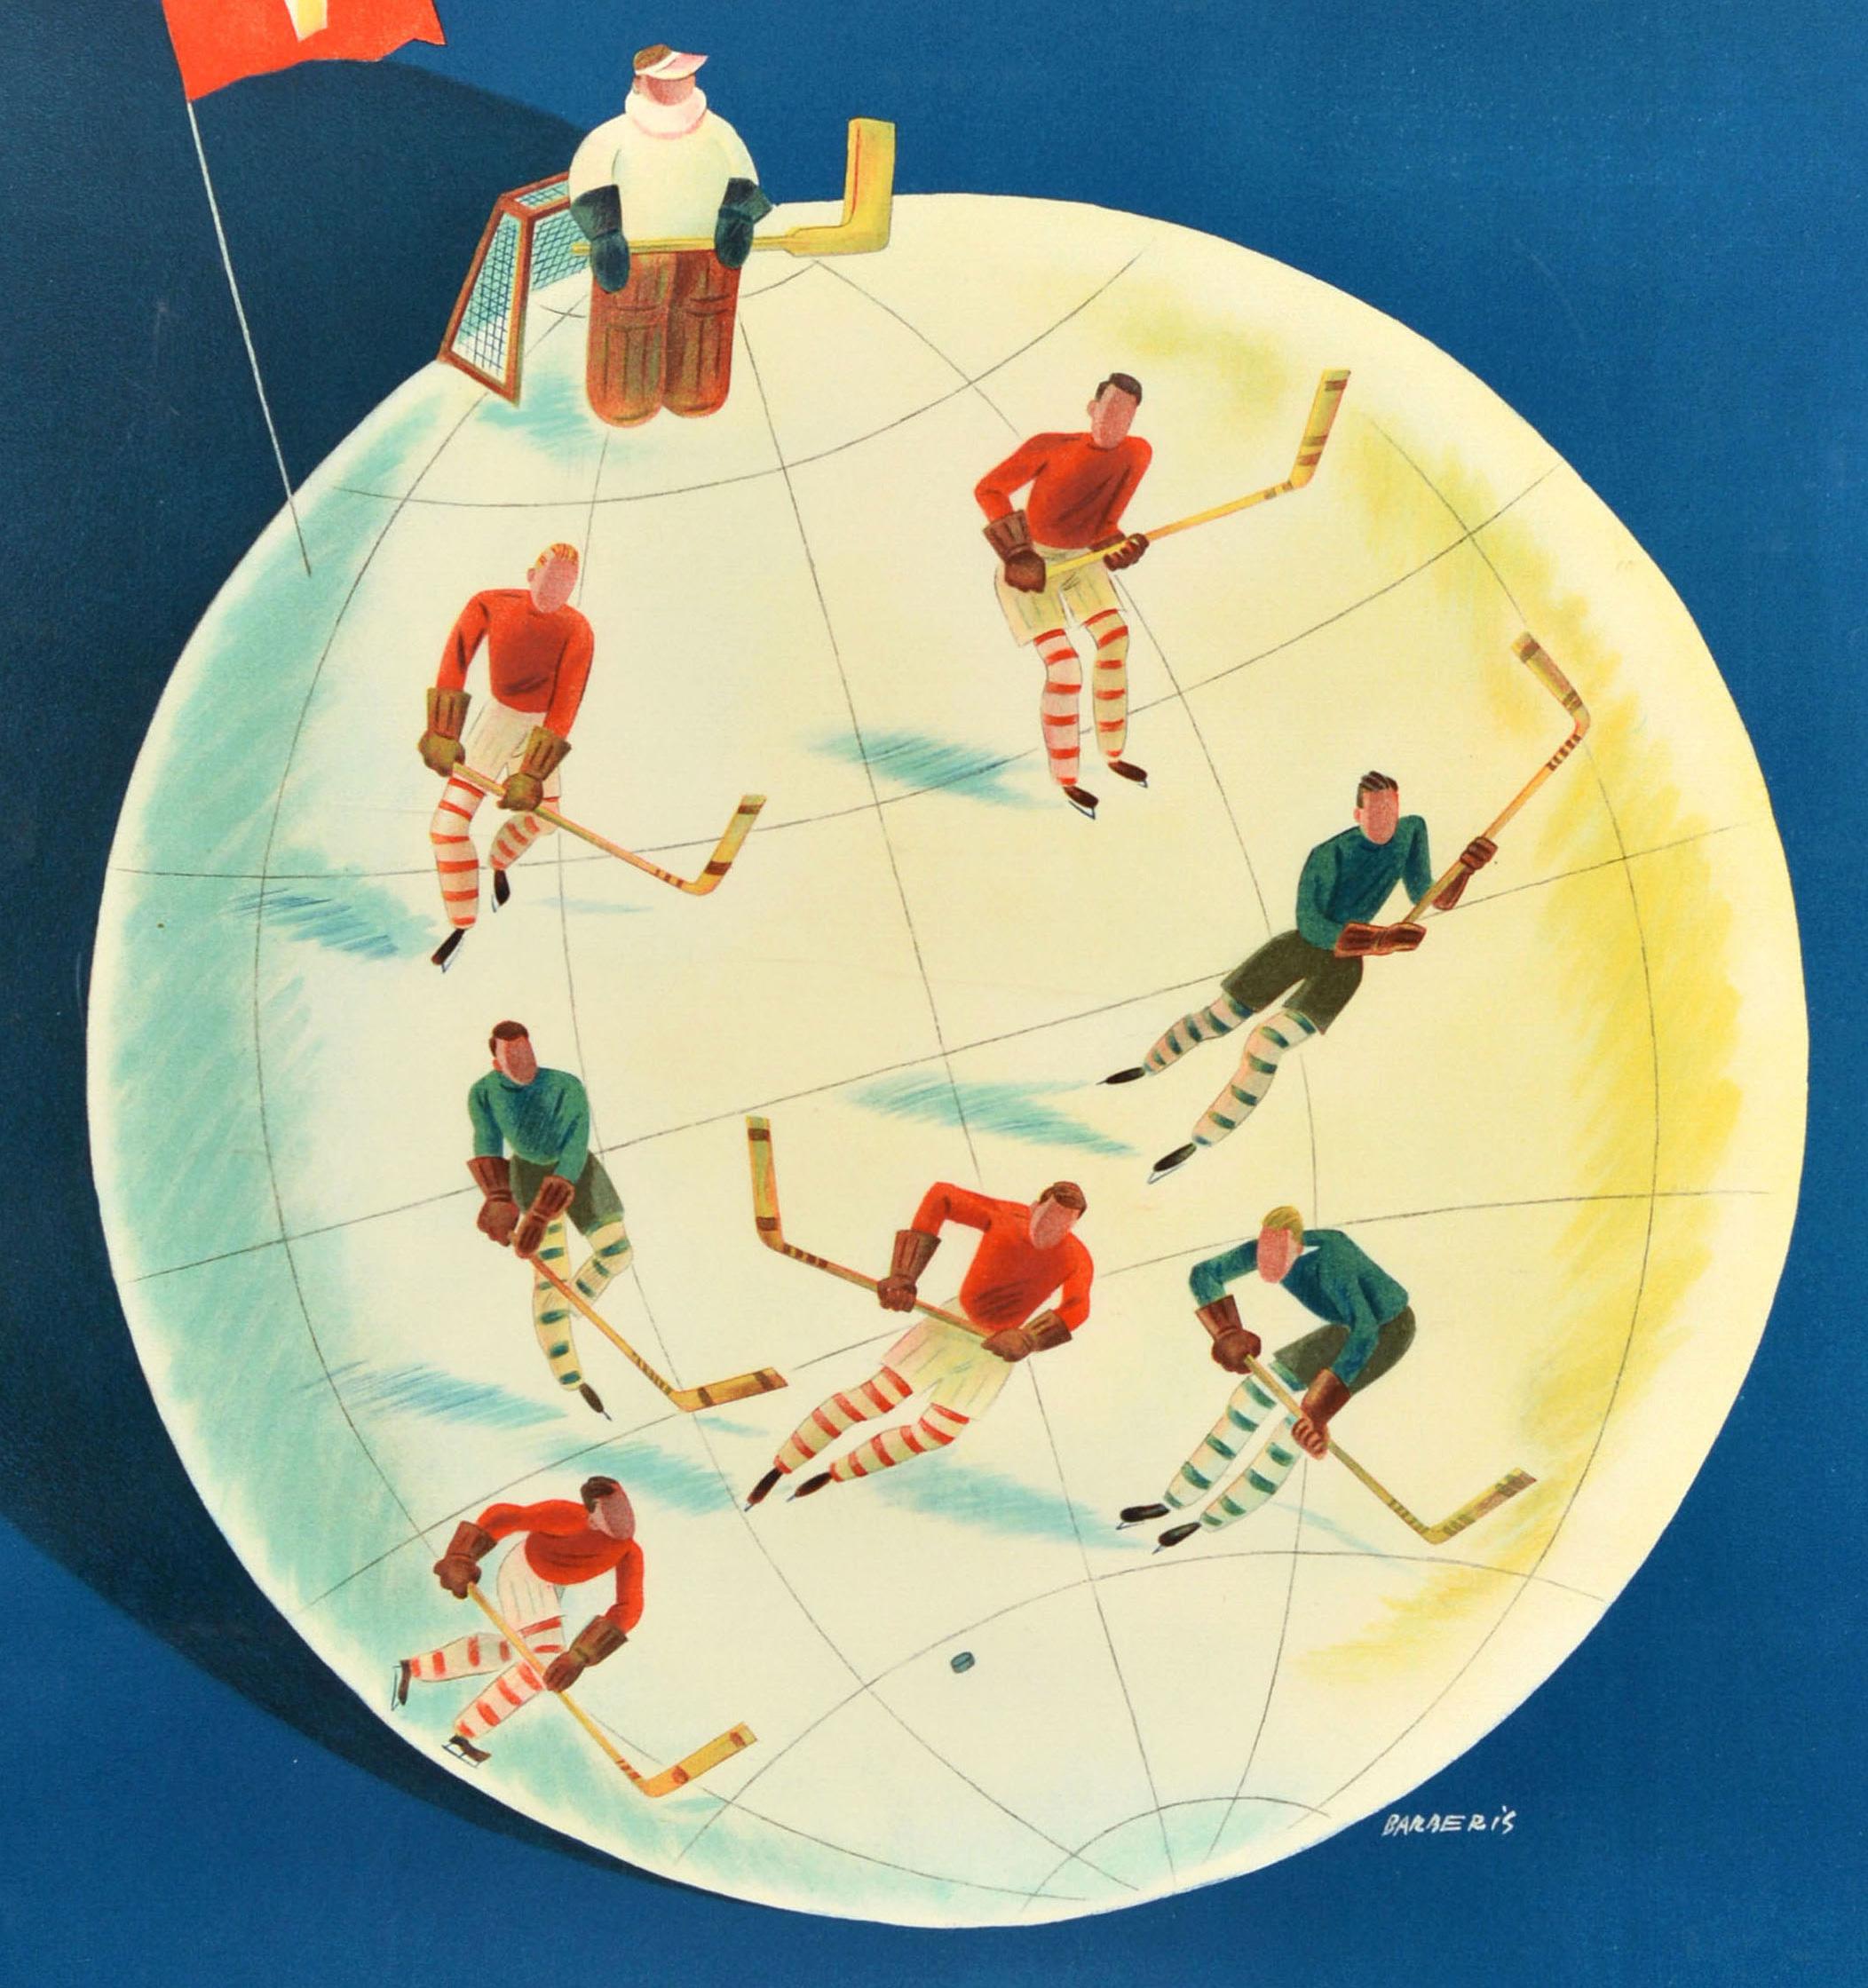 Original-Sportplakat für die Dolder Eisbahn Zürich, die täglich von 9-22.30 Uhr geöffnet ist. Das Plakat des Schweizer Künstlers Franco Barberis (1905-1992) zeigt Eishockeyspieler auf einer Weltkugel, die die Eisbahn darstellt, mit der Schweizer